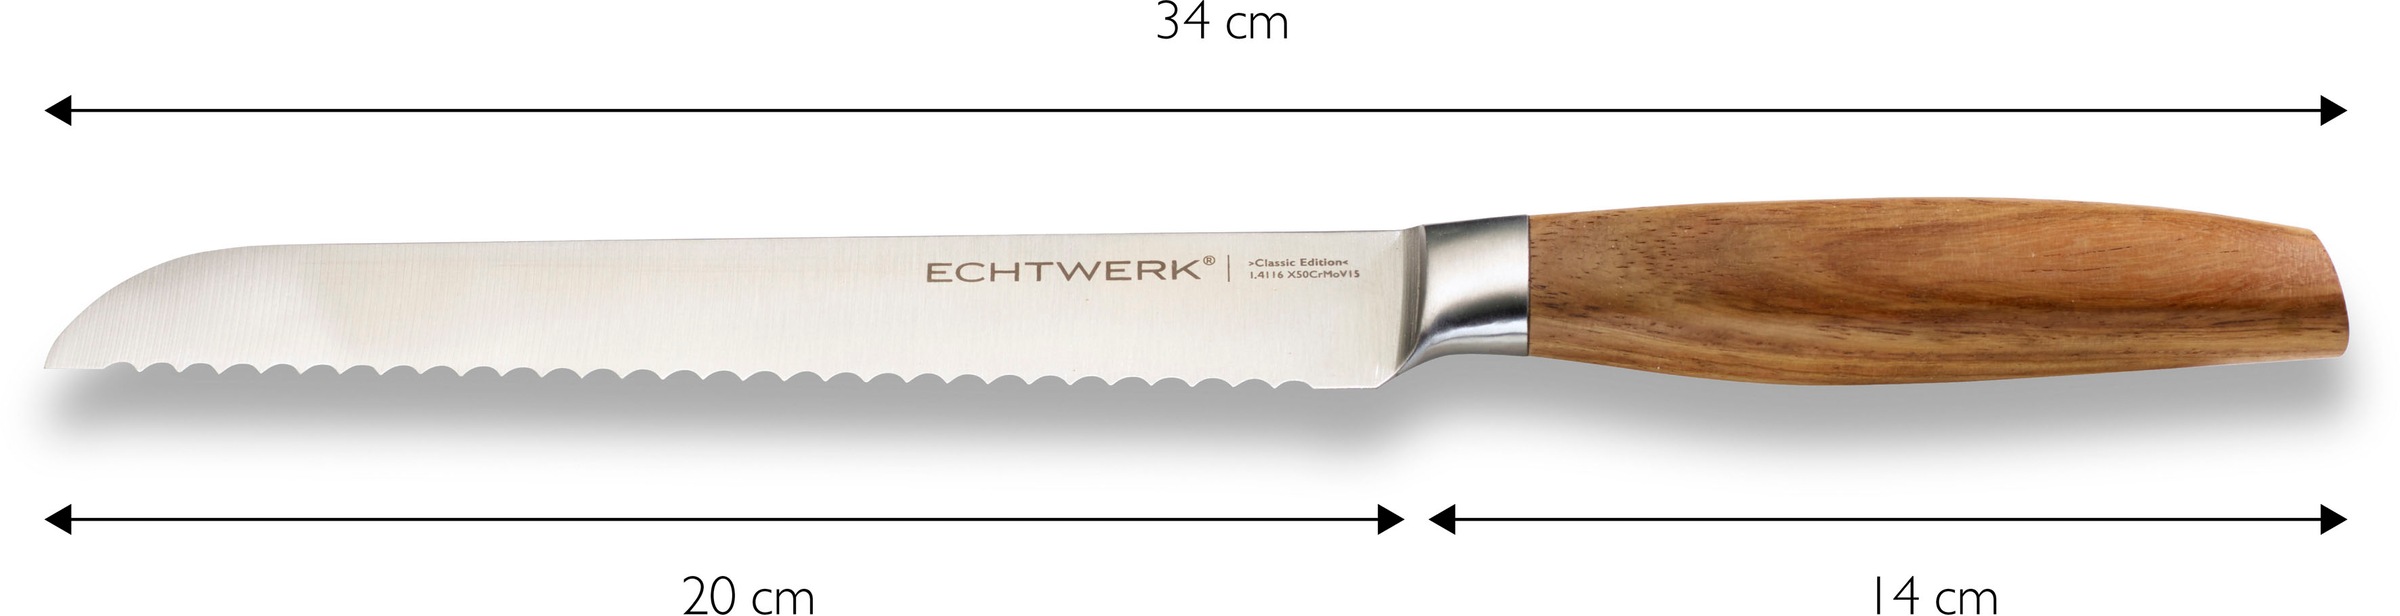 ECHTWERK Brotmesser »Classic Edition«, (1 tlg.), Küchenmesser, Edelstahl, Klingenlänge 20 cm, Griff aus Akazienholz